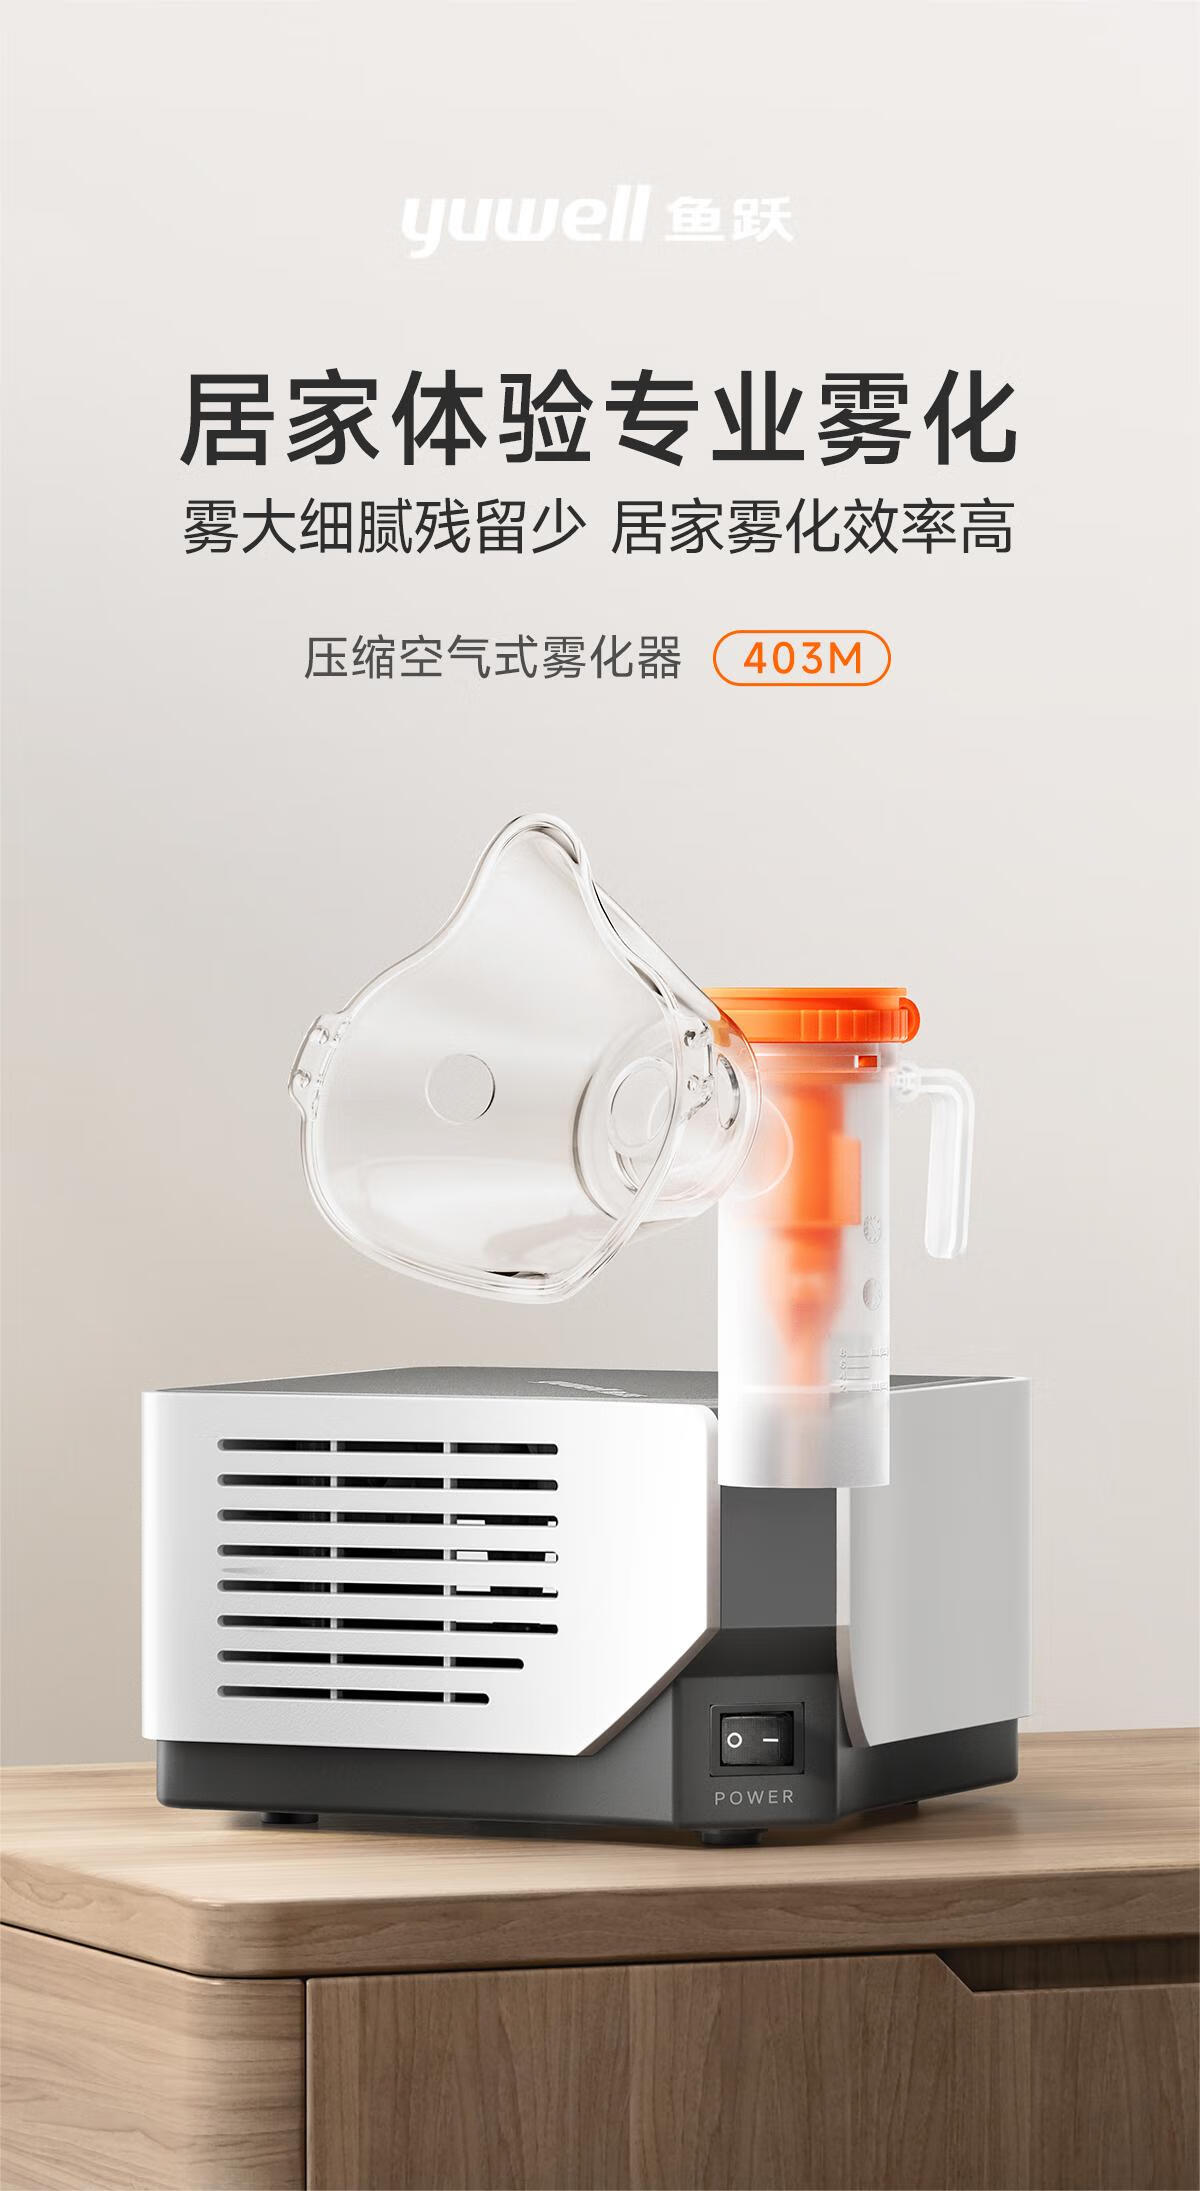 鱼跃(YUWELL)雾化器雾化机儿童成人家用医用压缩雾化器403M 空气压缩式雾化仪面罩